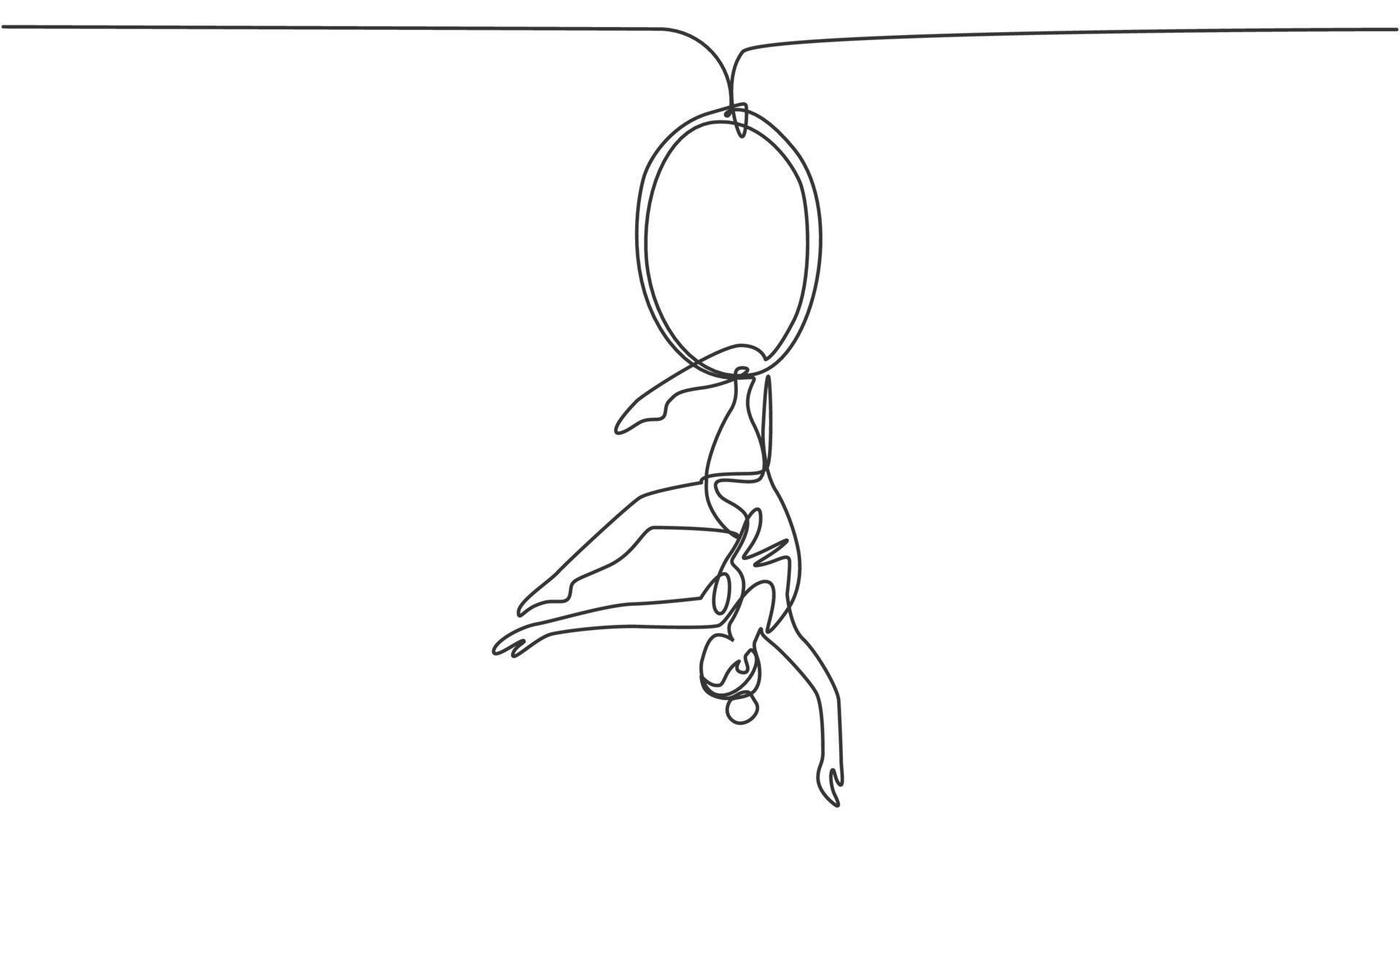 één enkele lijn die een acrobatische vrouw tekent die op een luchthoepel optreedt terwijl ze danst met één been hangend en haar hoofd naar beneden. moderne doorlopende lijn tekenen ontwerp grafische vectorillustratie. vector